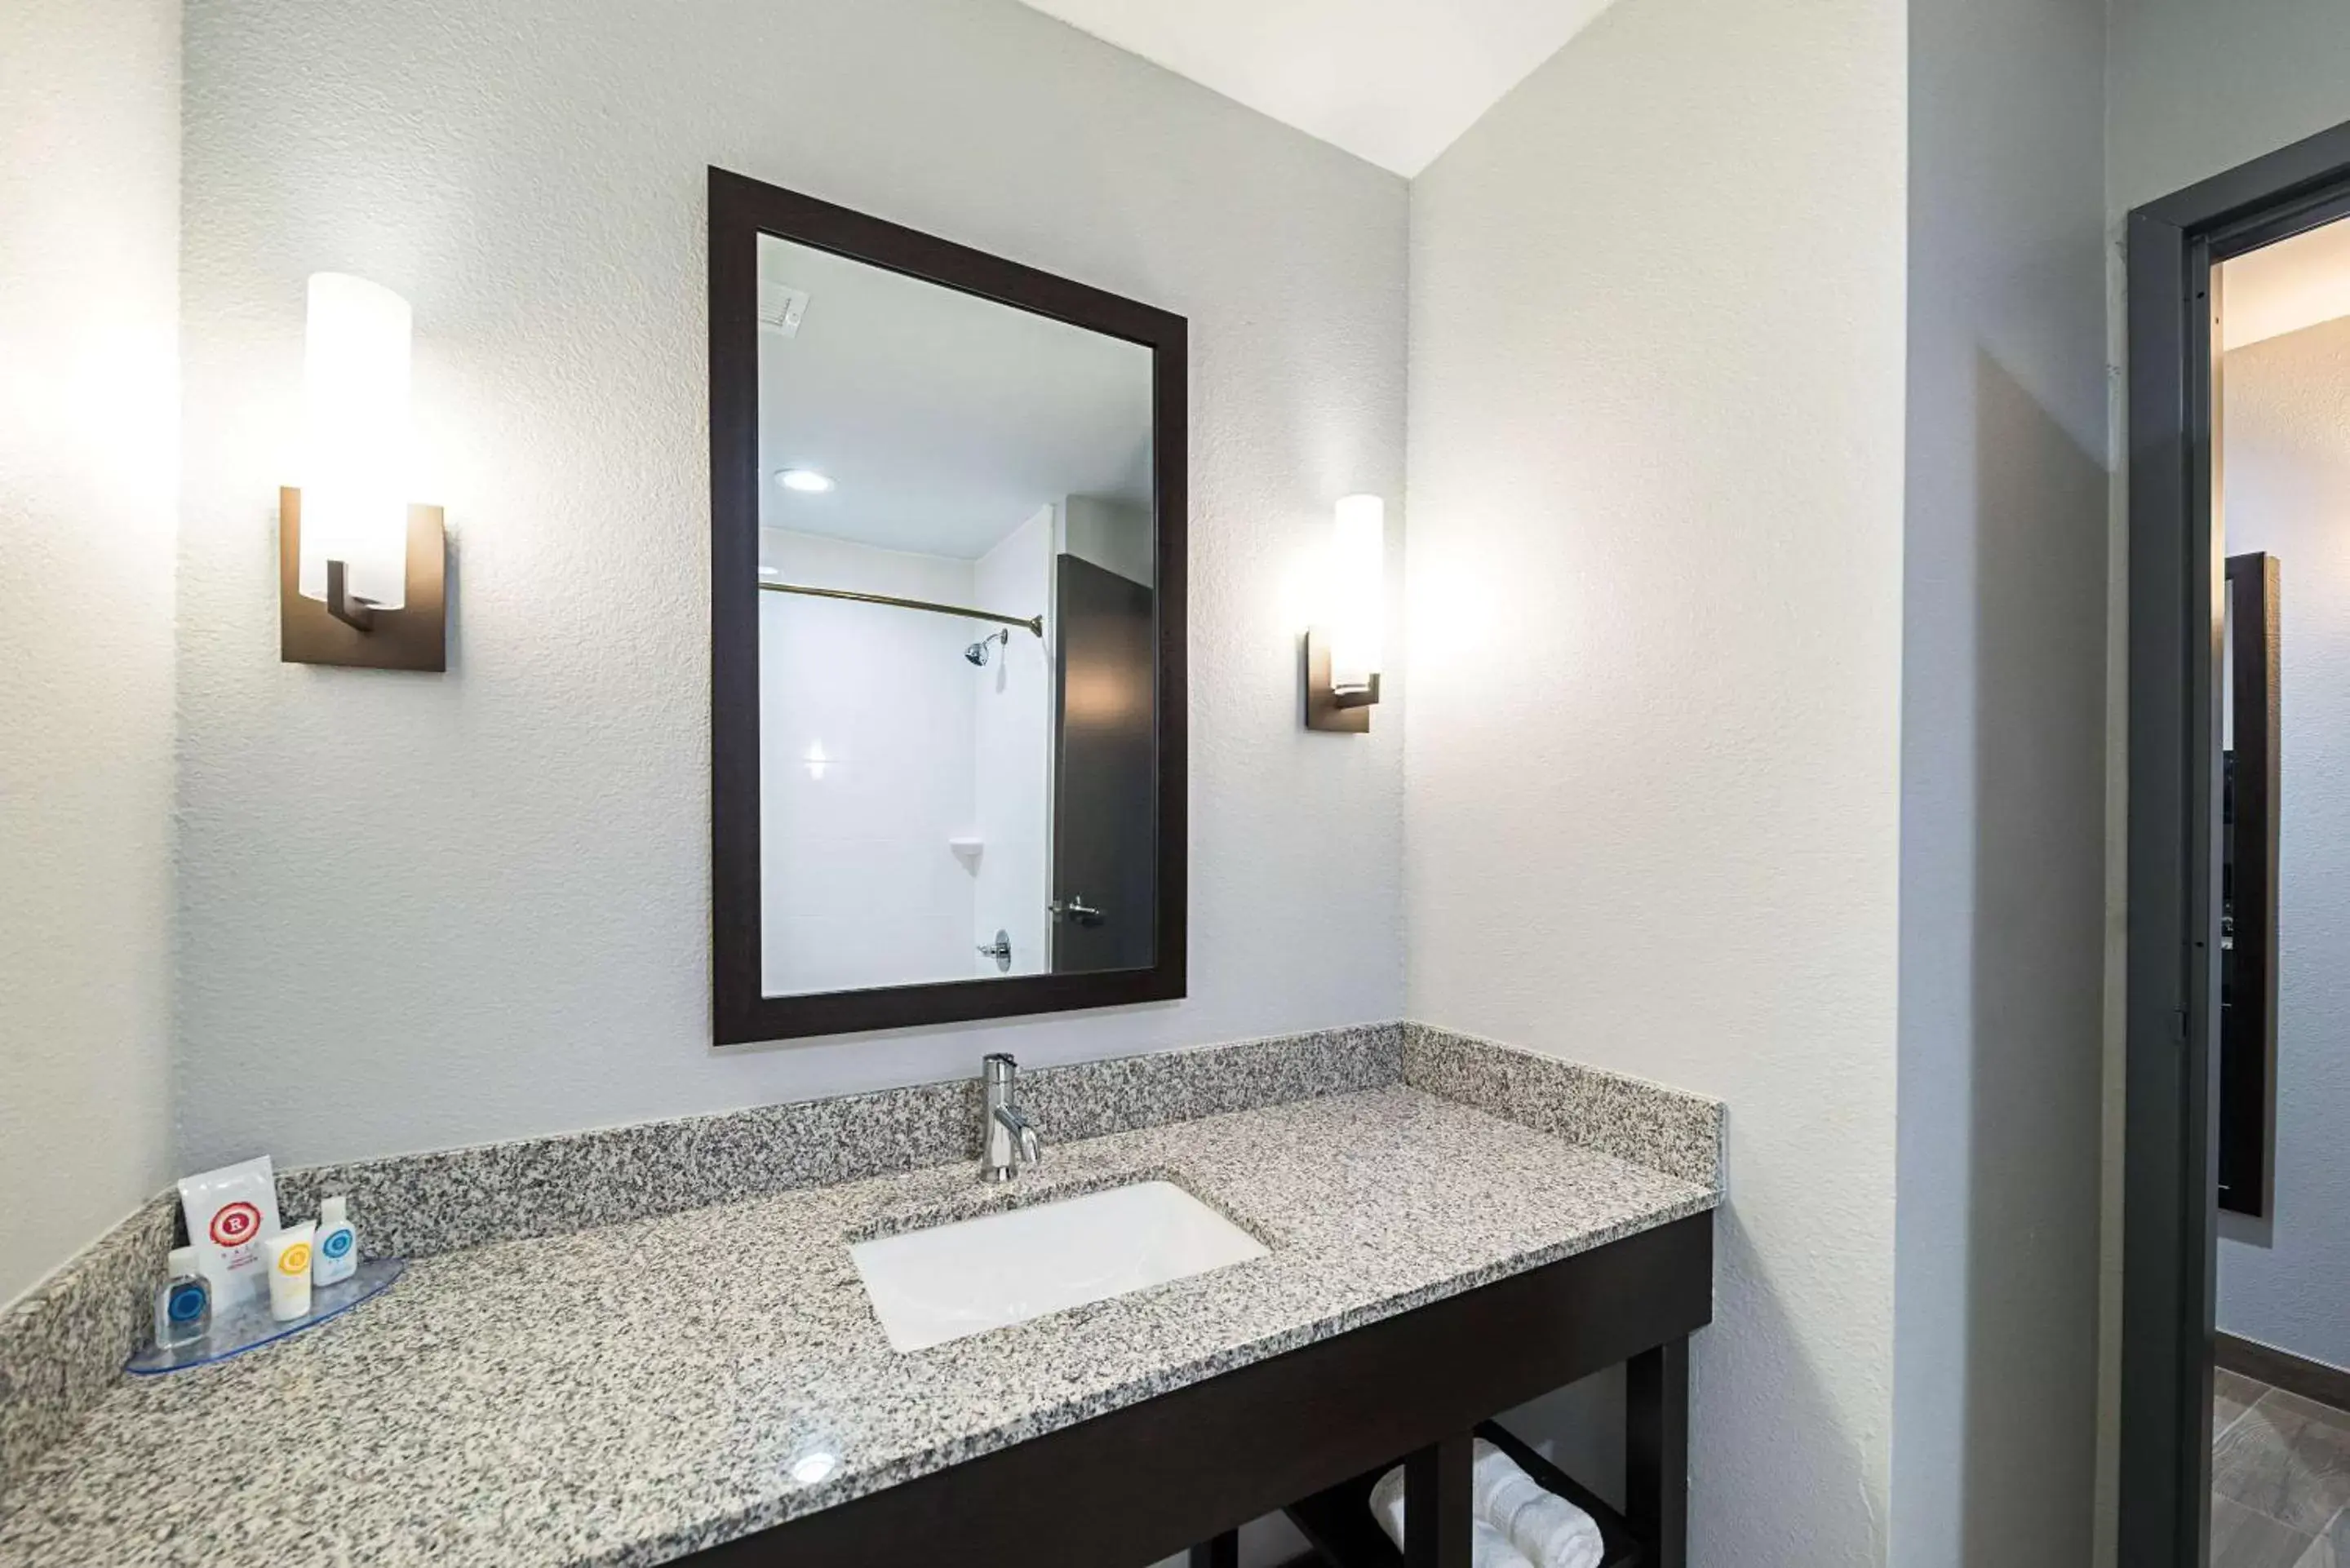 Bathroom in Comfort Inn & Suites Oklahoma City near Bricktown